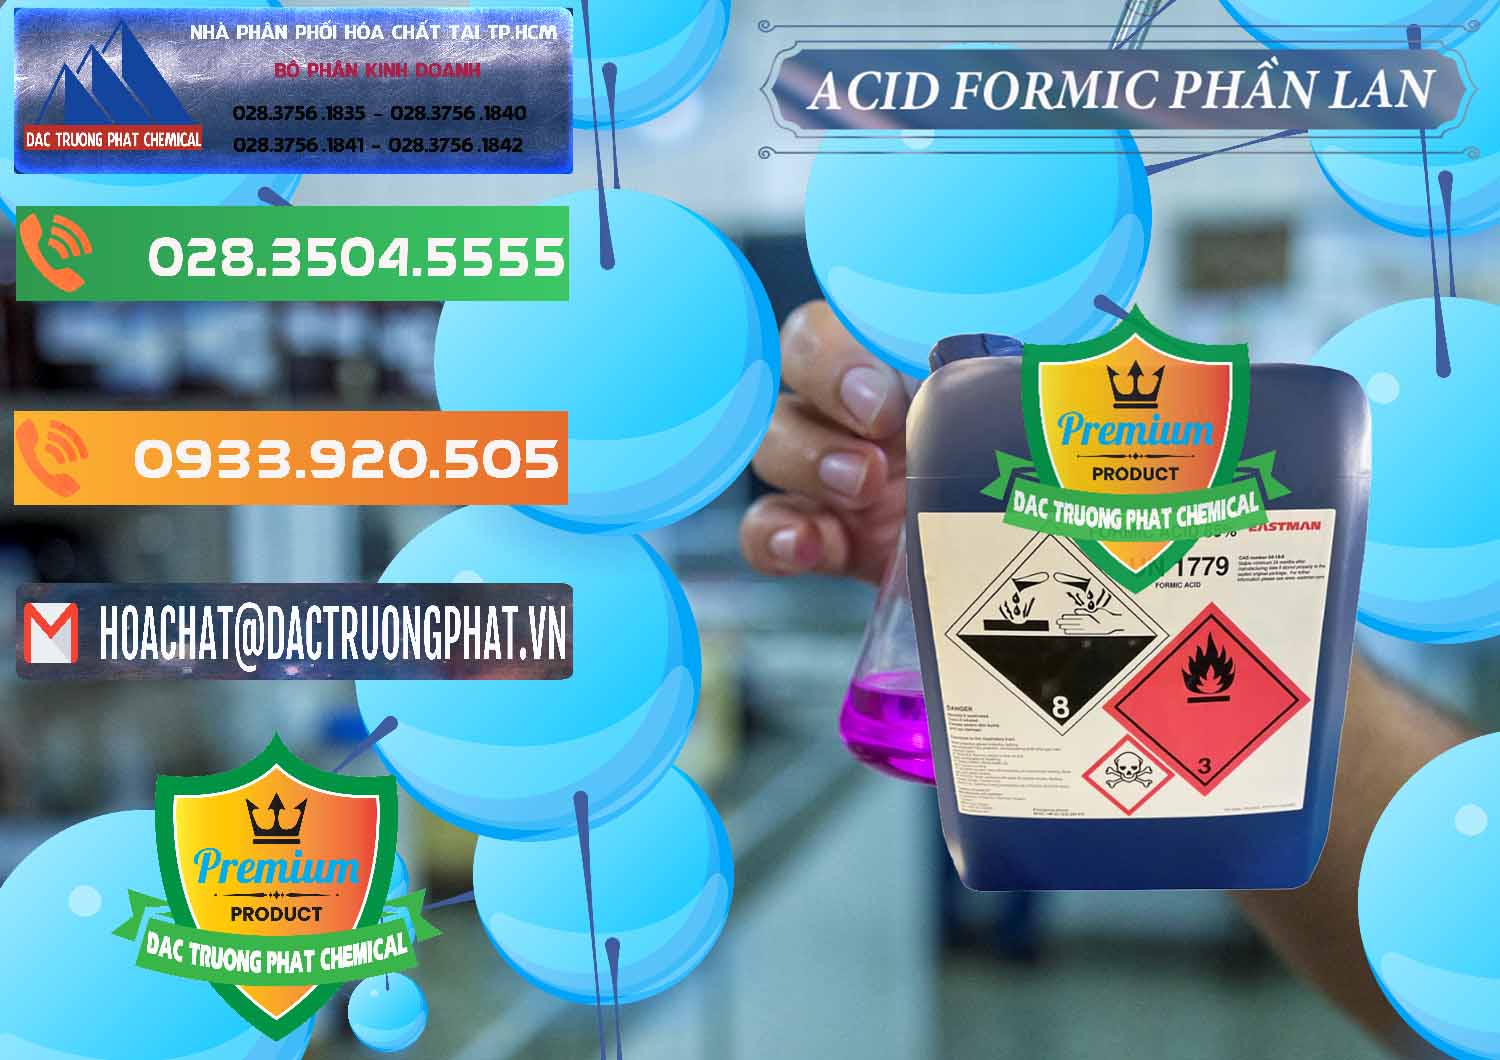 Nhà phân phối & bán Acid Formic - Axit Formic Phần Lan Finland - 0376 - Nơi cung cấp - phân phối hóa chất tại TP.HCM - hoachatxulynuoc.com.vn